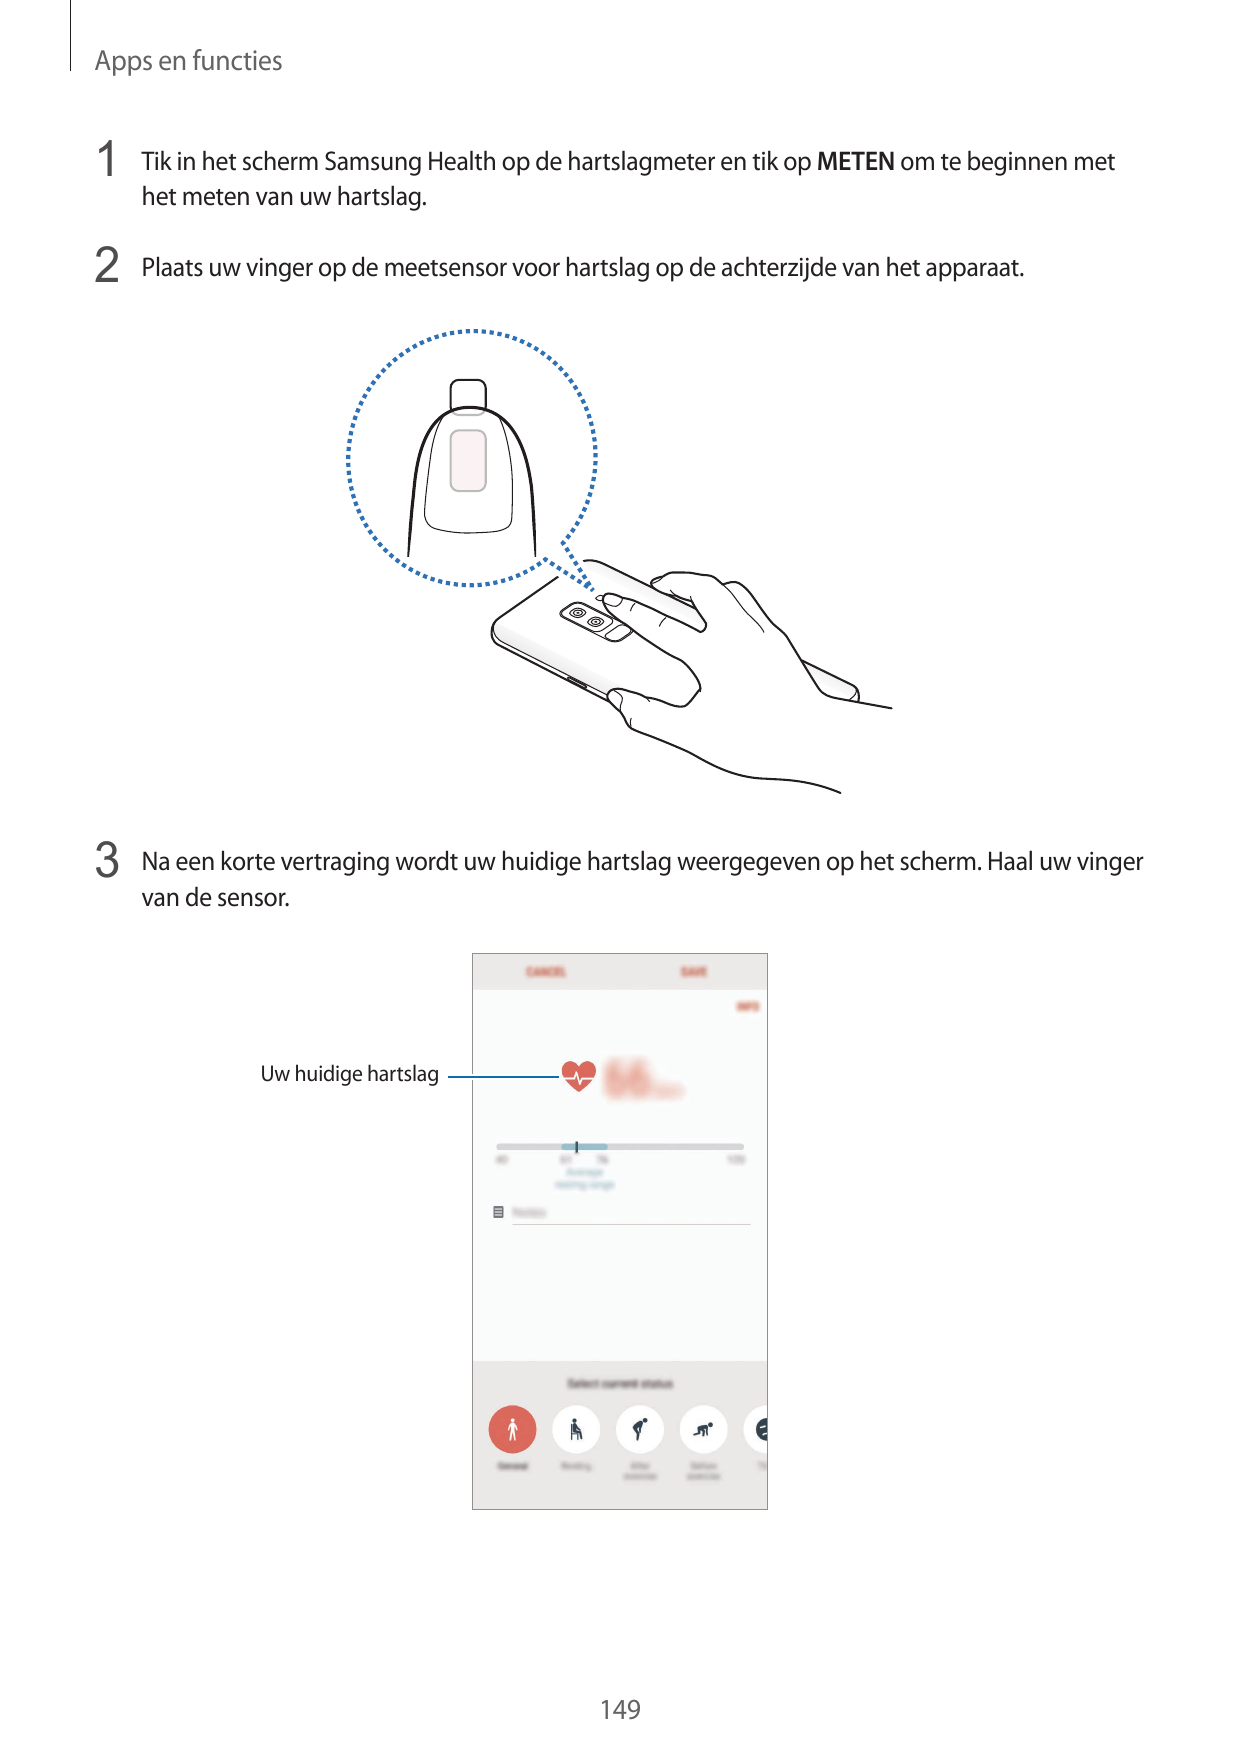 Apps en functies1 Tik in het scherm Samsung Health op de hartslagmeter en tik op METEN om te beginnen methet meten van uw hartsl